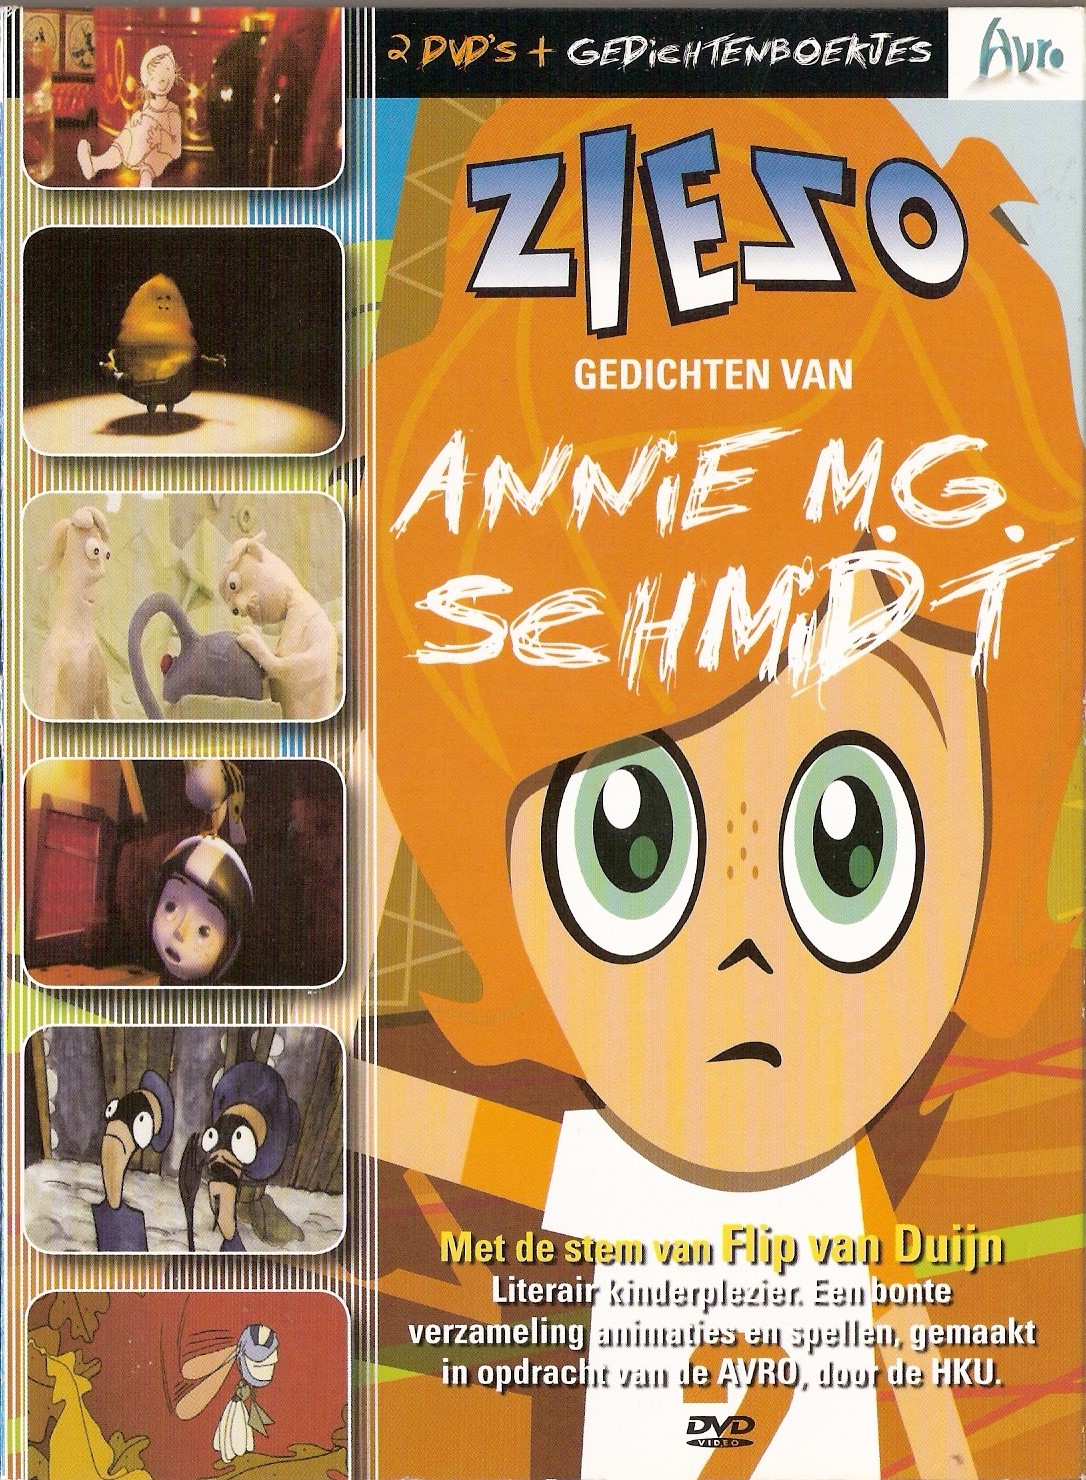 Annie M.G. Schmidt - Ziezo (2DVD5) (2005)